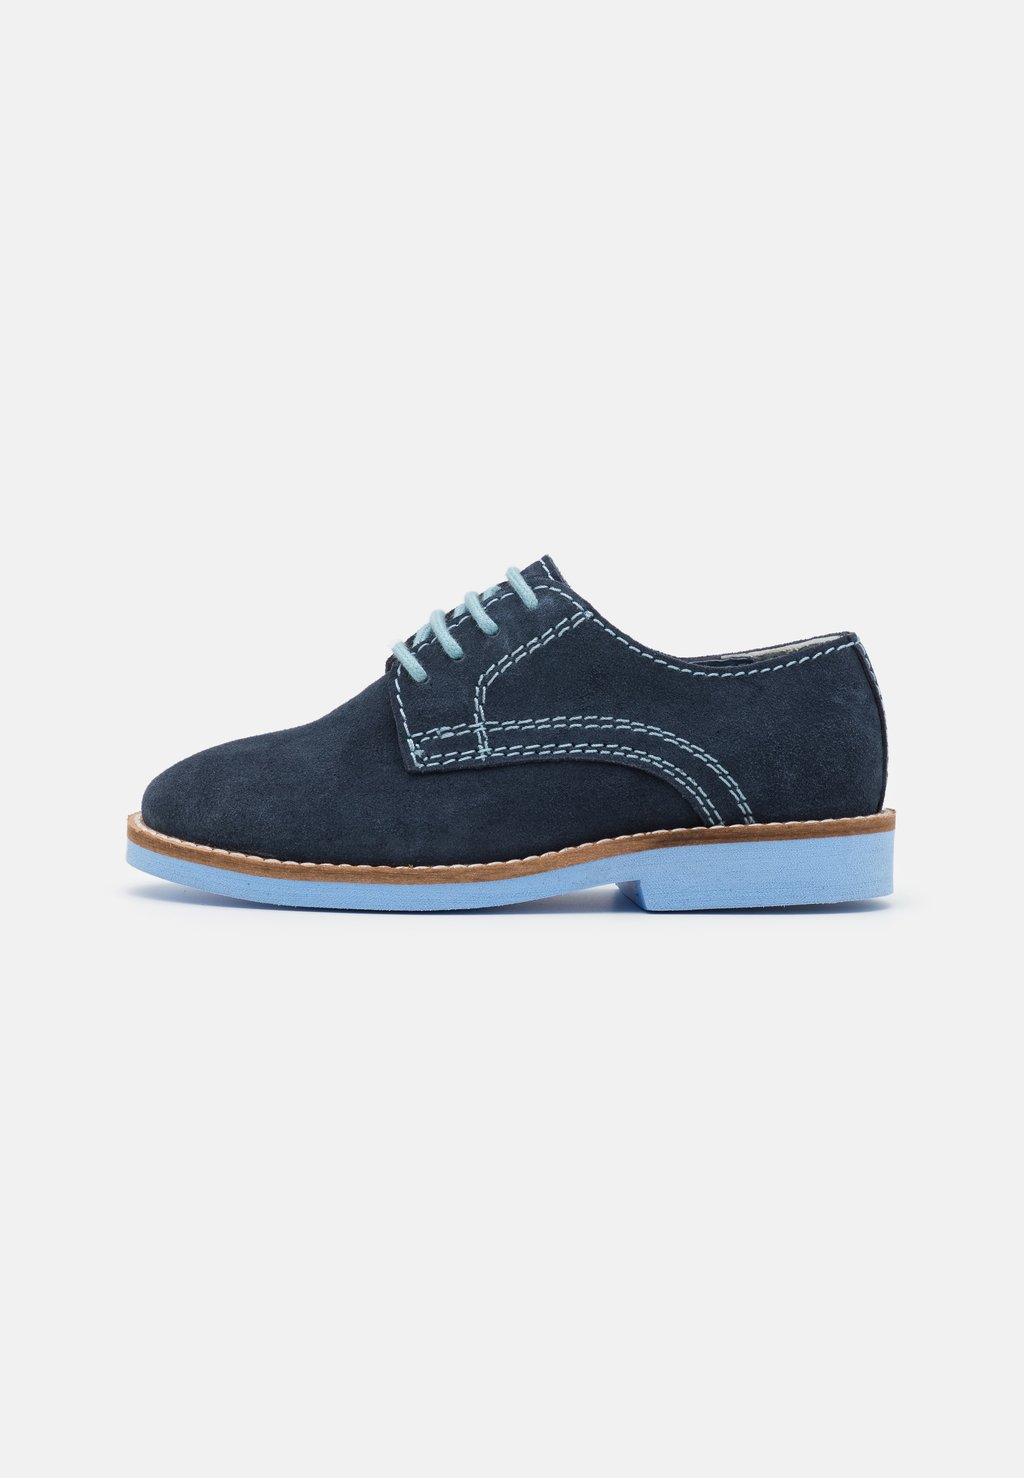 Спортивные туфли на шнуровке LEATHER Friboo, цвет dark blue спортивные туфли на шнуровке leather friboo цвет dark blue